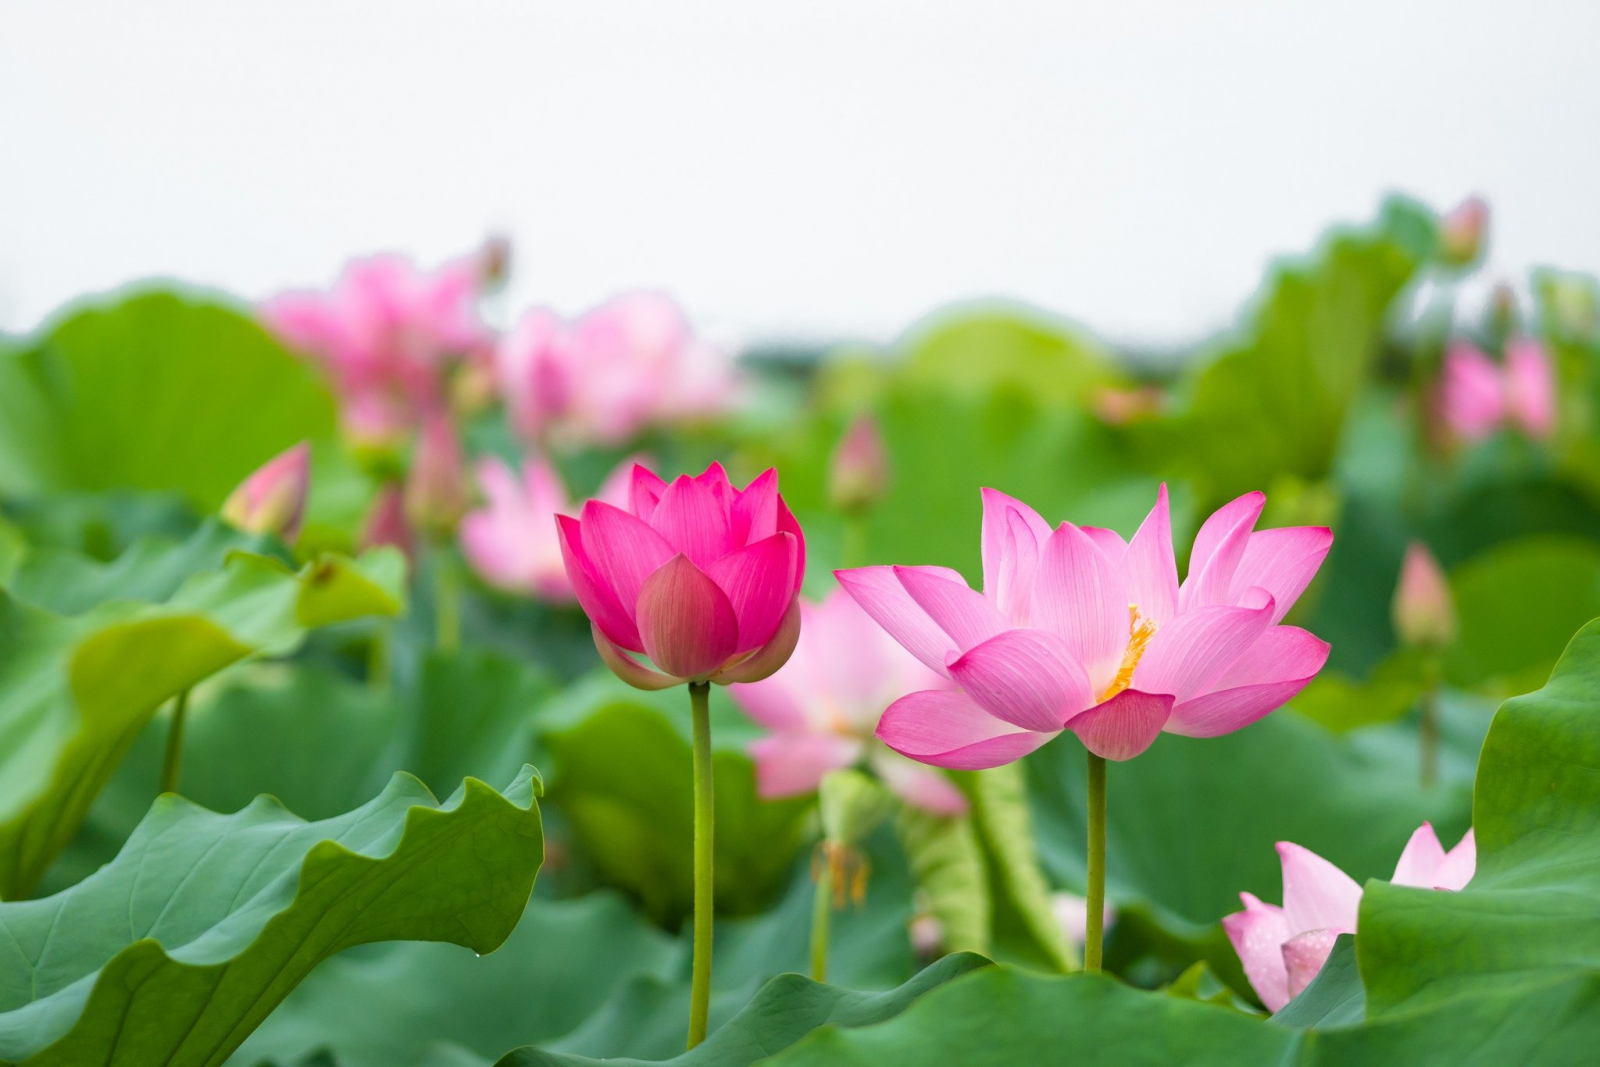 Hoa sen là một loại hoa bình dị, tượng trưng cho đạo Phật và, thực tế, hoa sen lại phát sinh ở hồ, ao bùn, rồi vươn lên và tỏa ra hương sắc, làm đẹp thơm cho cả mọi người và môi trường sinh thái.